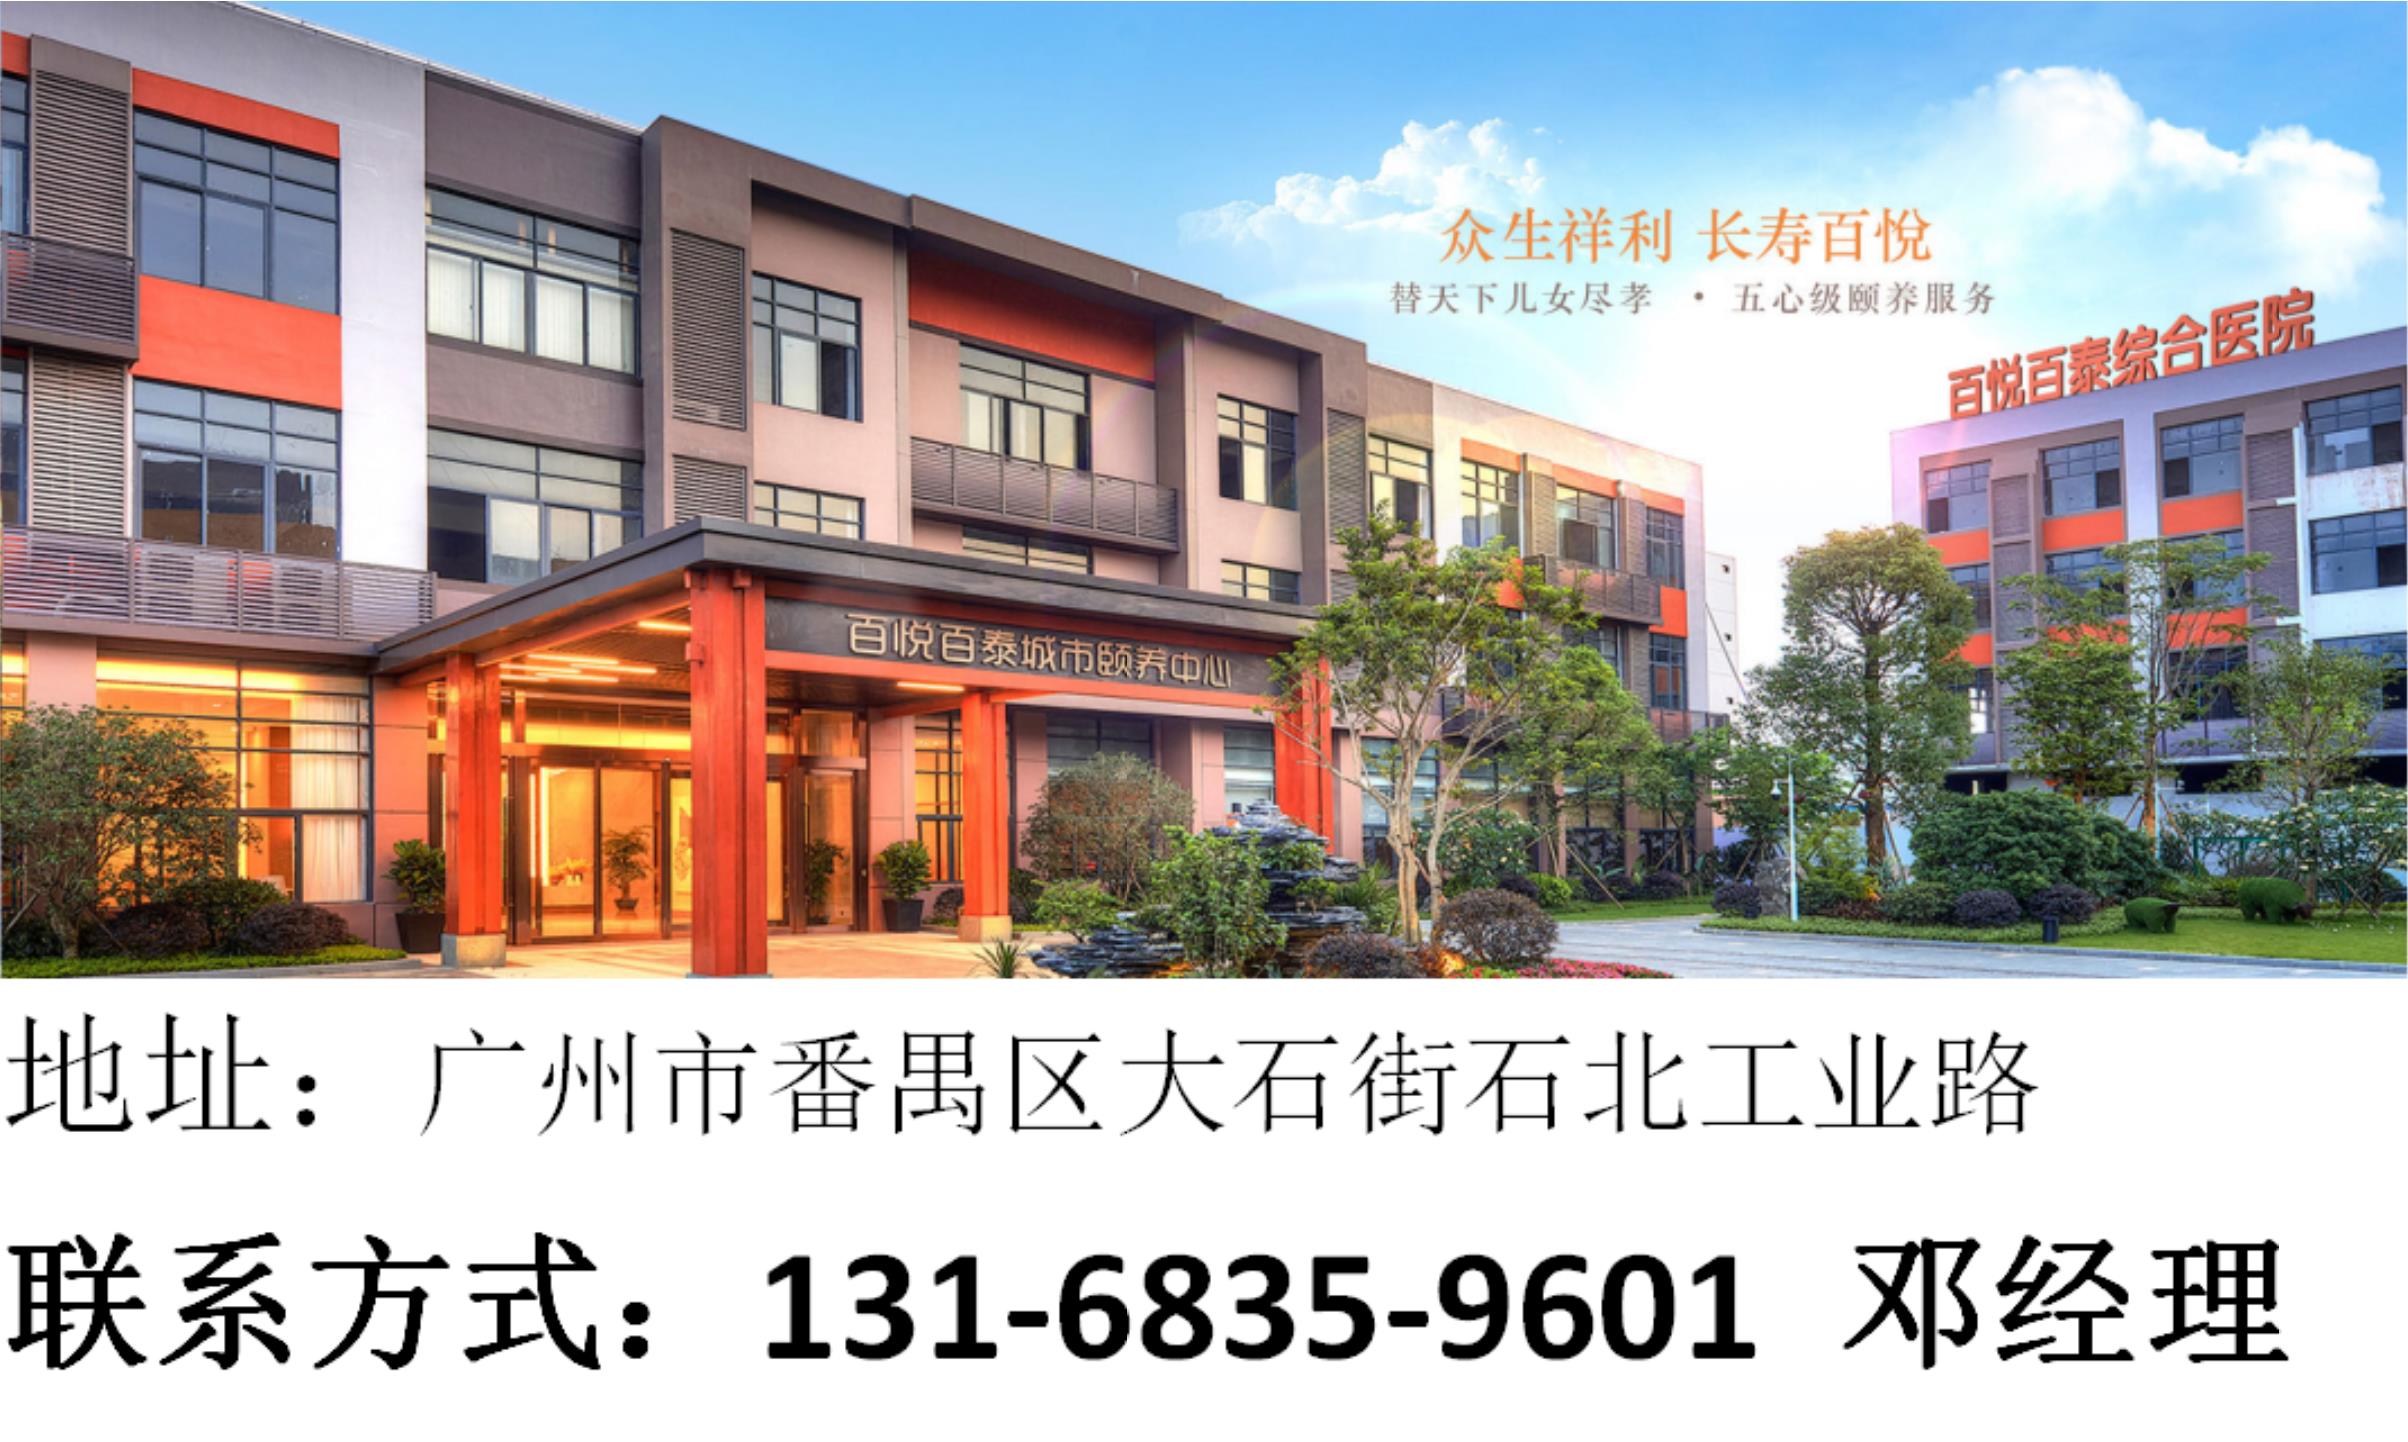 广州排名的老人院百悦百泰养老公寓五心级护理养老机构